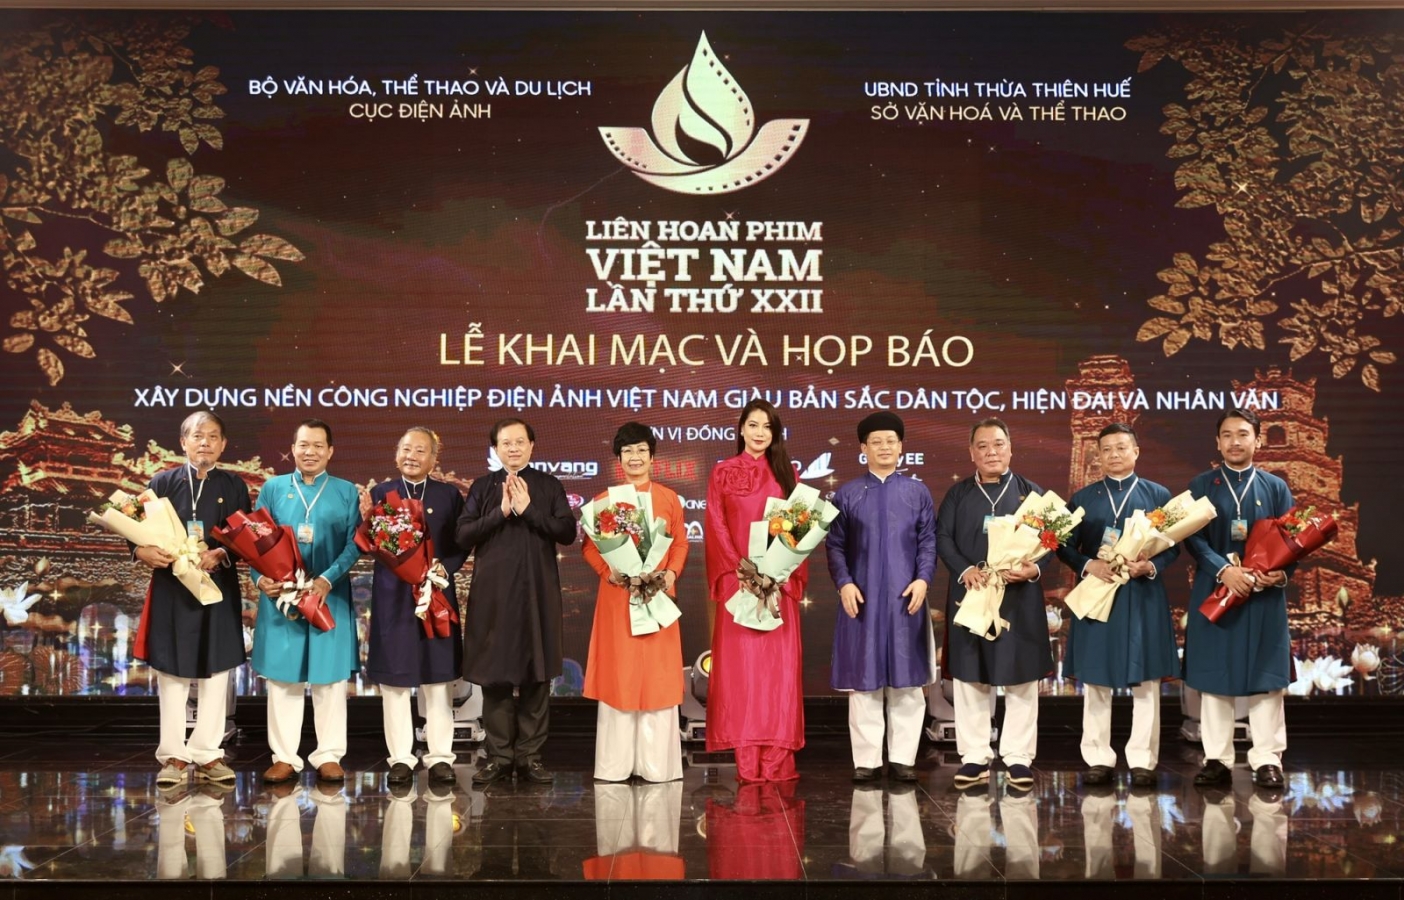 Liên hoan phim Việt Nam lần thứ 23 sẽ tổ chức tại Đà Lạt